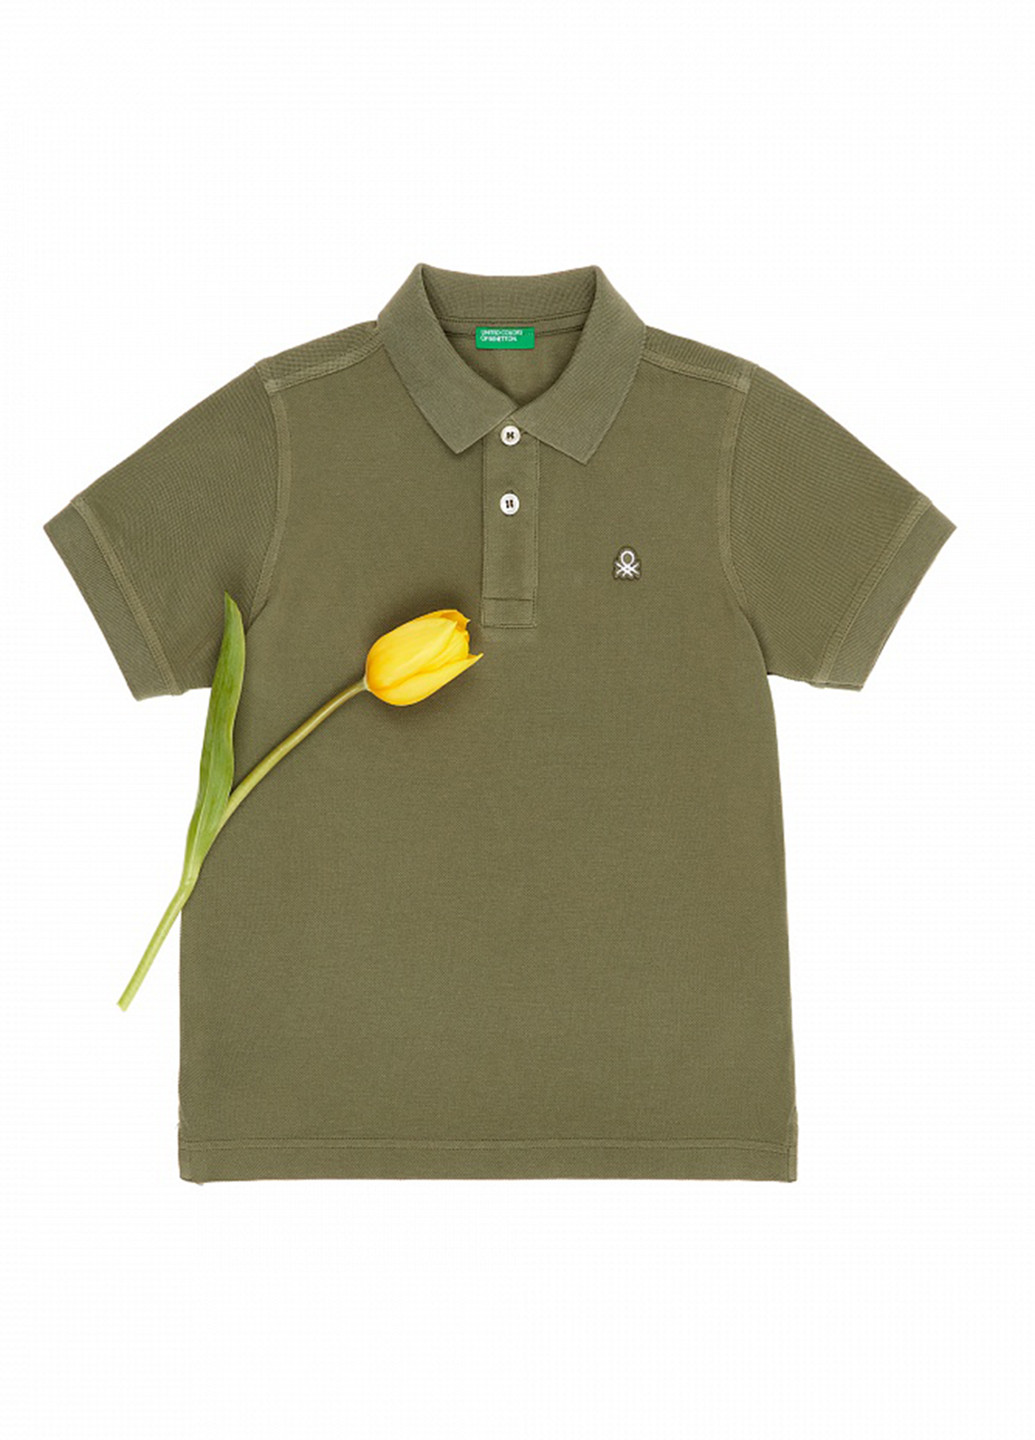 Оливковая (хаки) детская футболка-поло для мальчика United Colors of Benetton